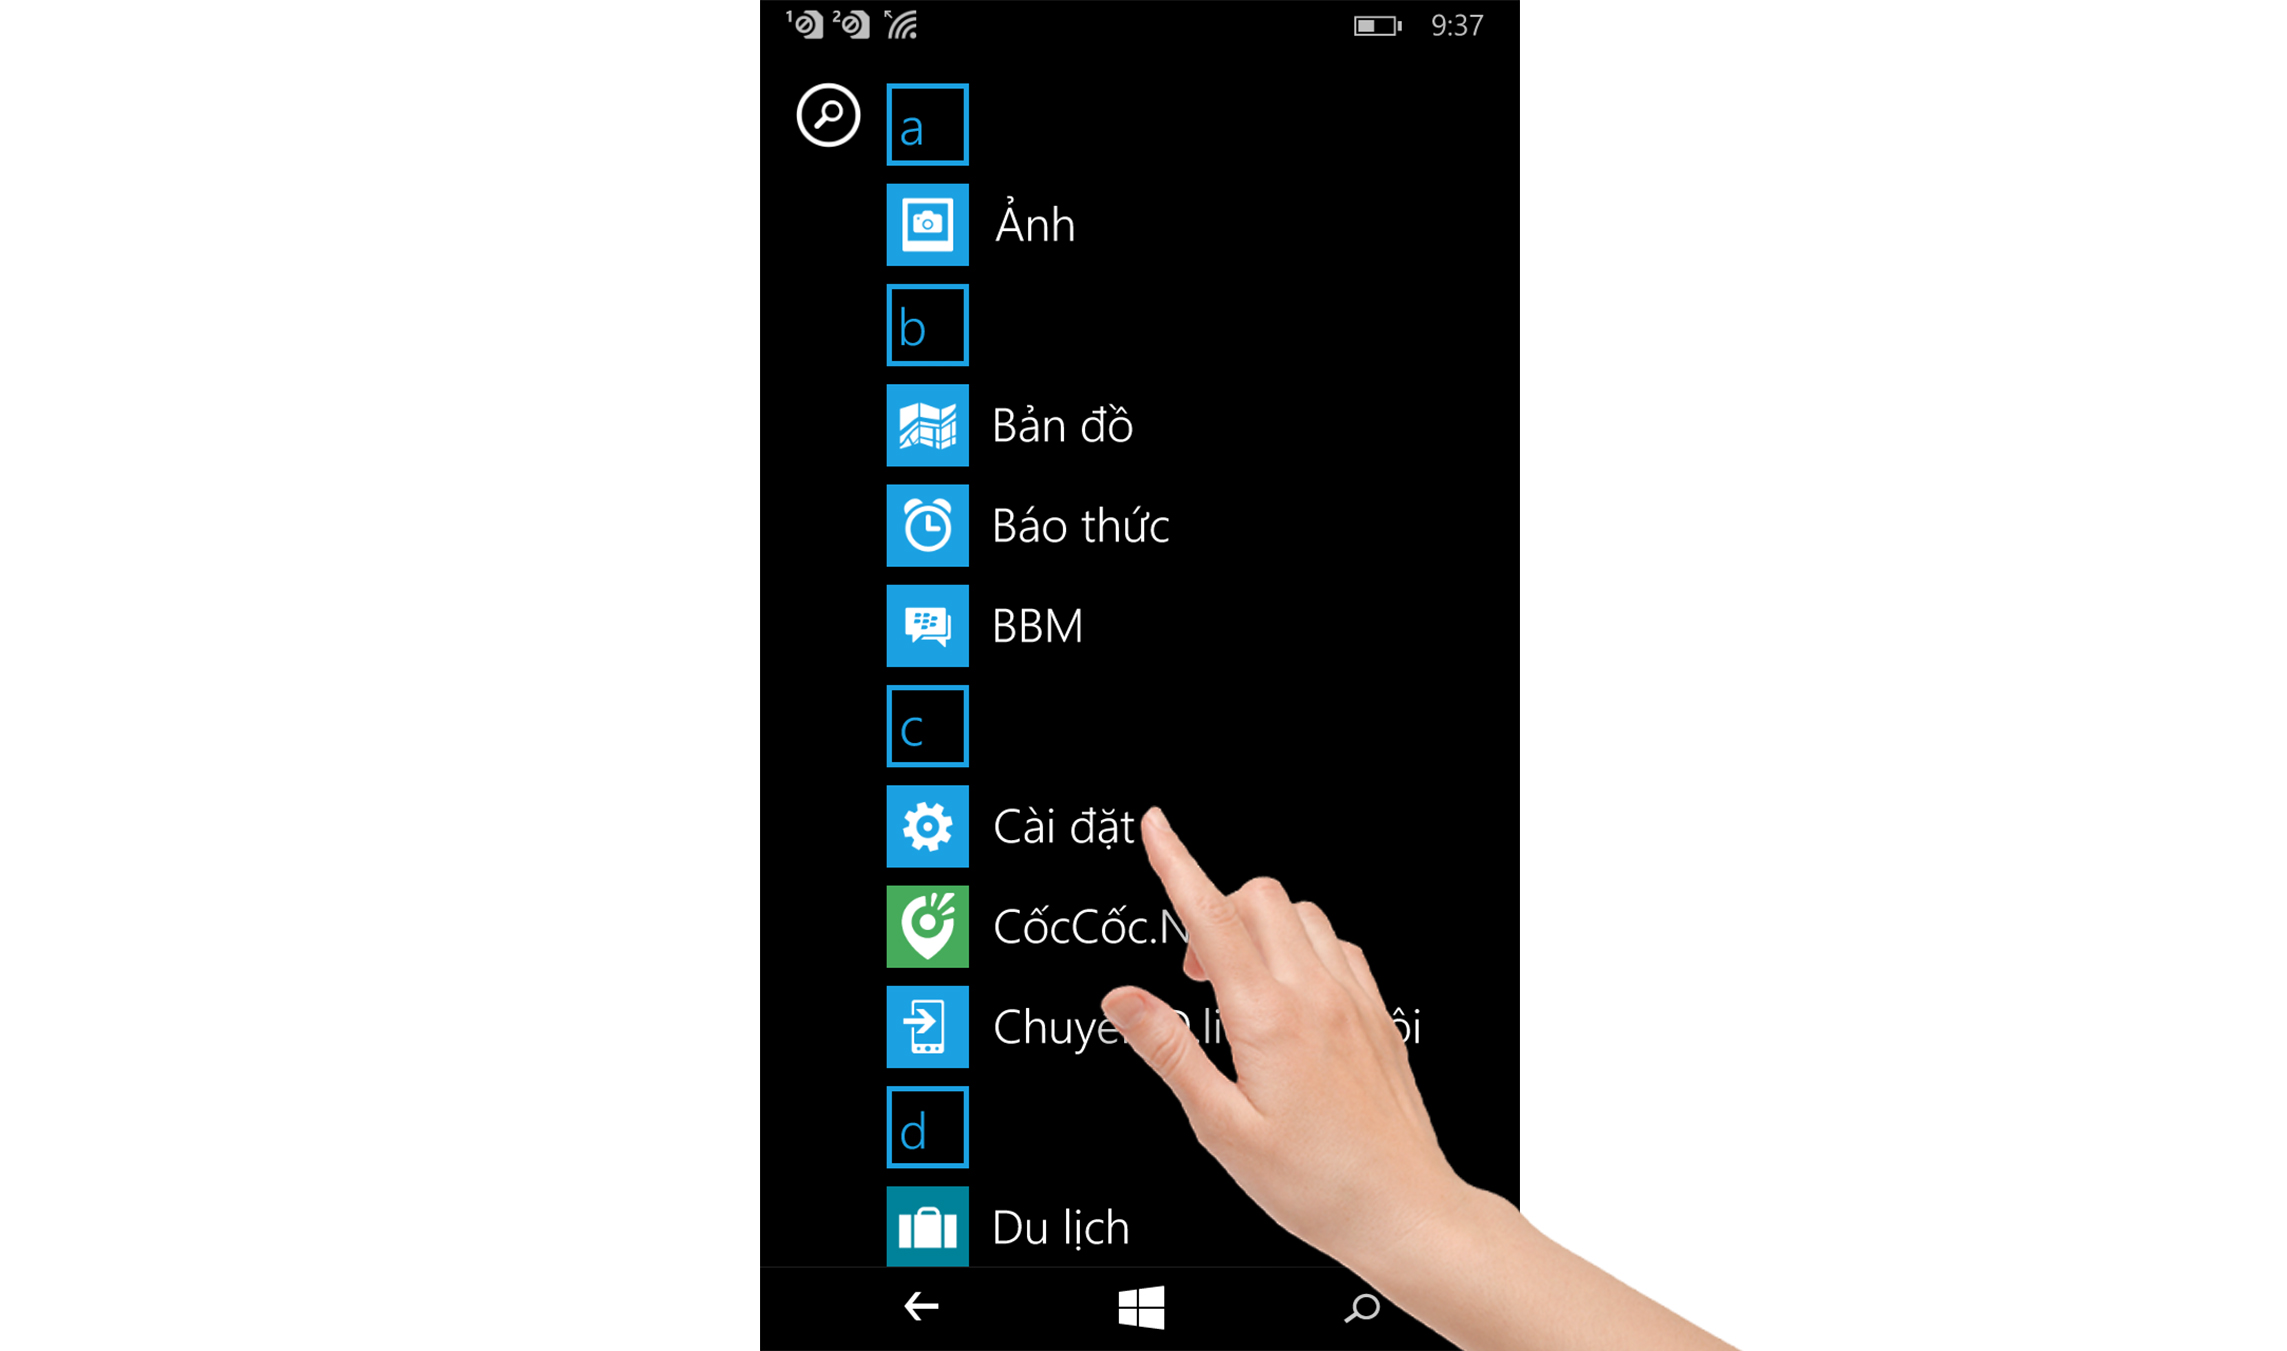 Cách phản chiếu hình ảnh từ điện thoại Windows Phone lên Smart Tivi Samsung 2015 > Cách phản chiếu hình ảnh từ điện thoại Windows Phone lên Smart Tivi Samsung 2015 bằng Screen Mirroring